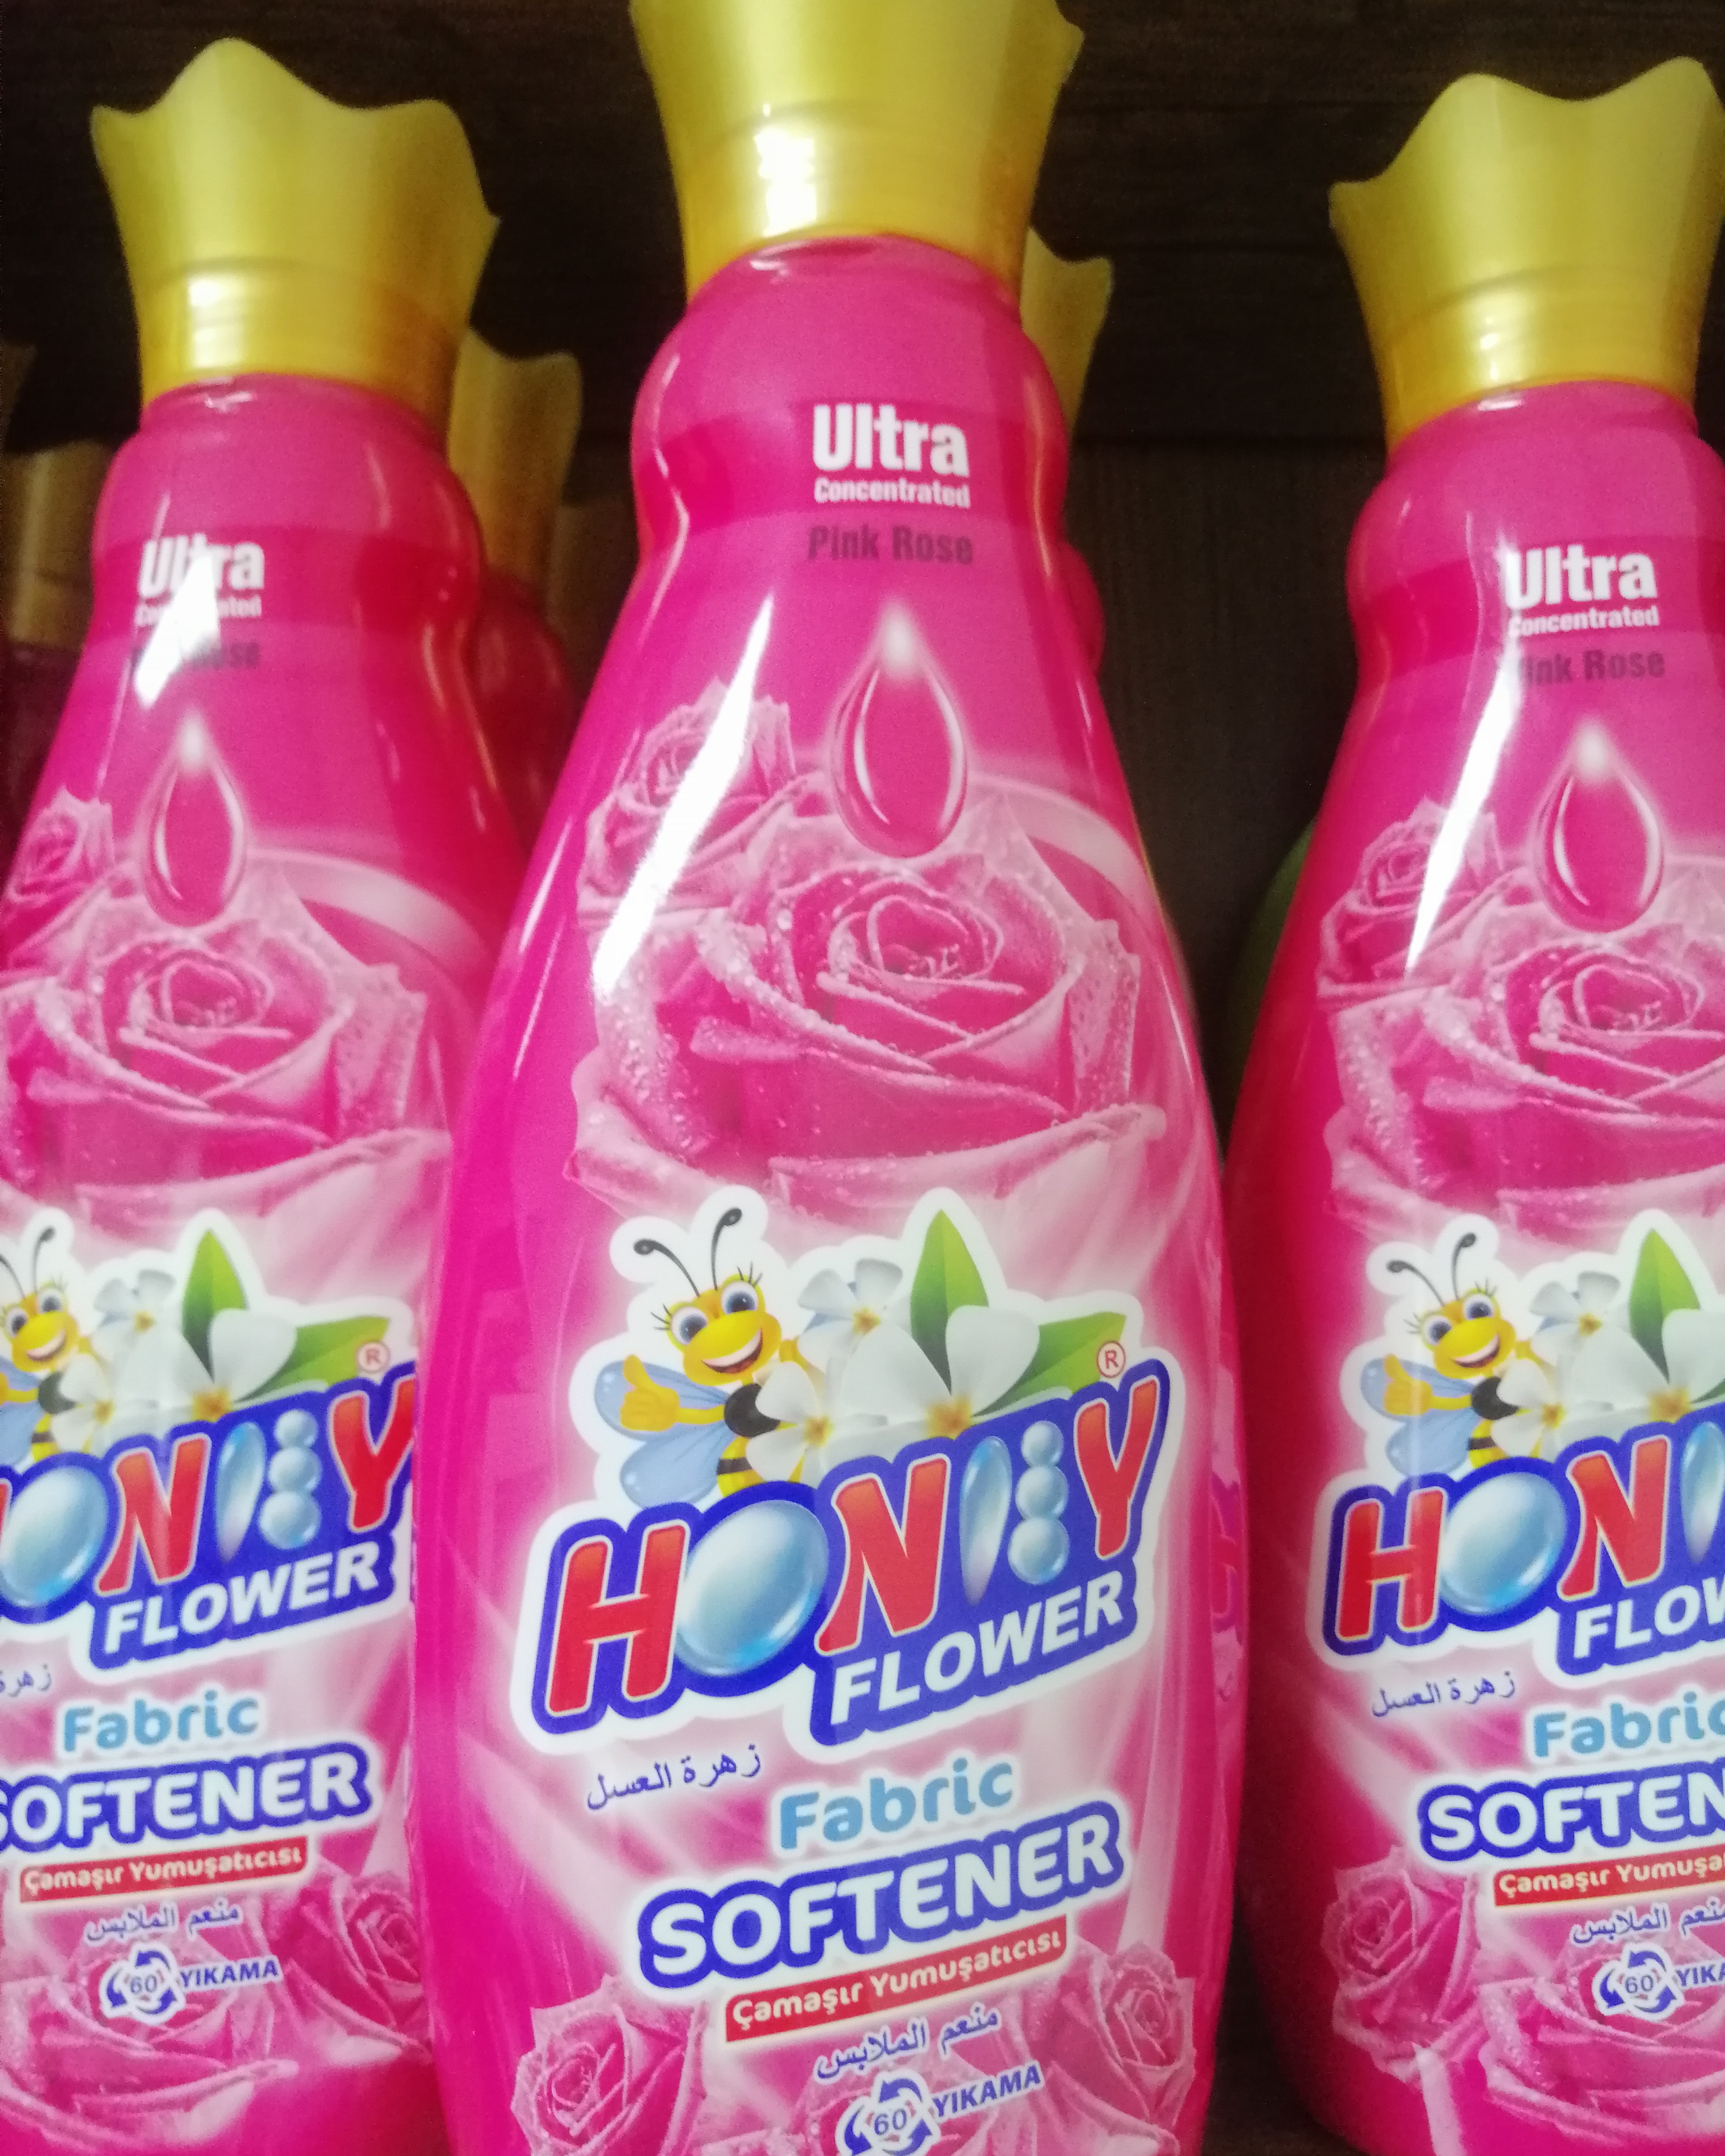 Honey flower clothes softener